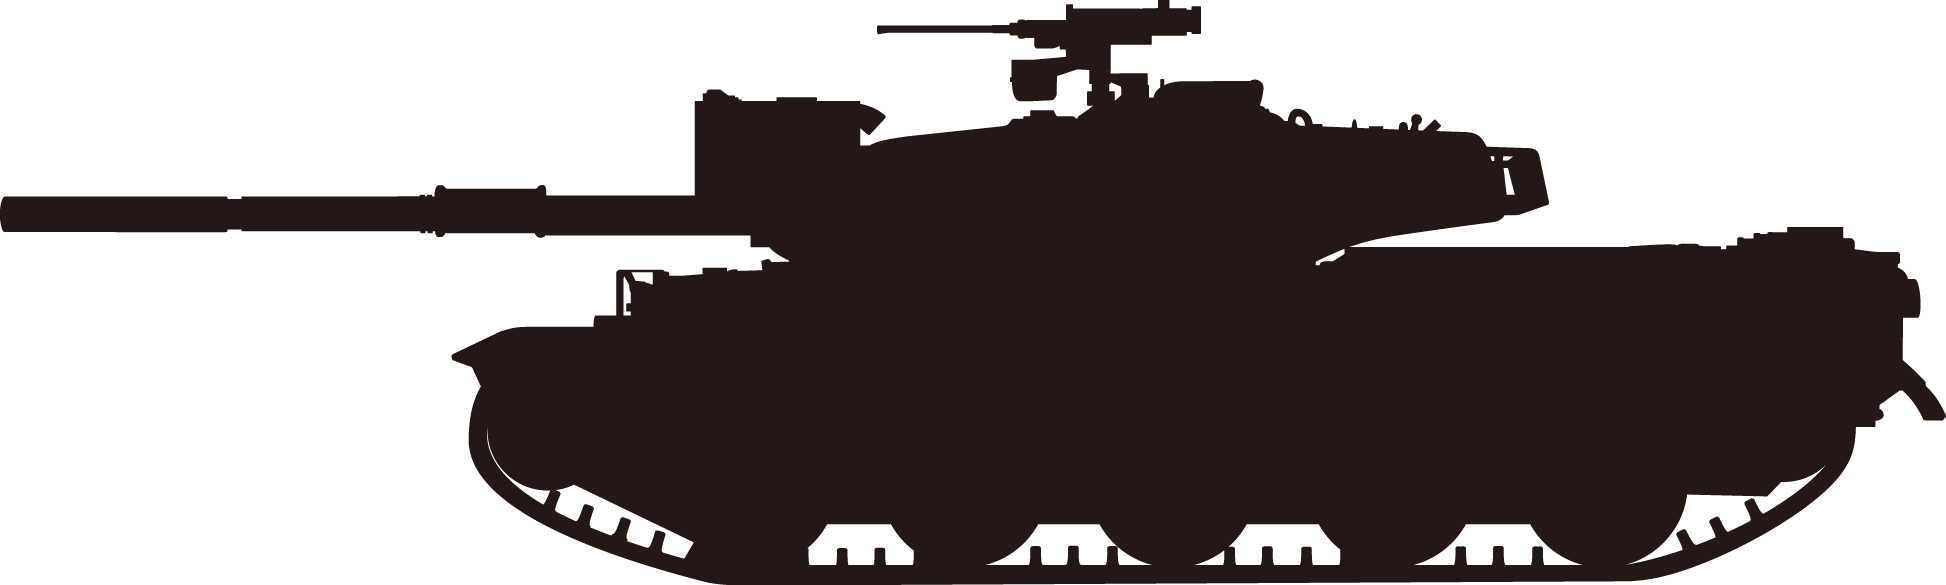 空のカケラ ライブラリ 10式戦車 90式戦車 74式戦車 フリー素材画像アイコン イラスト